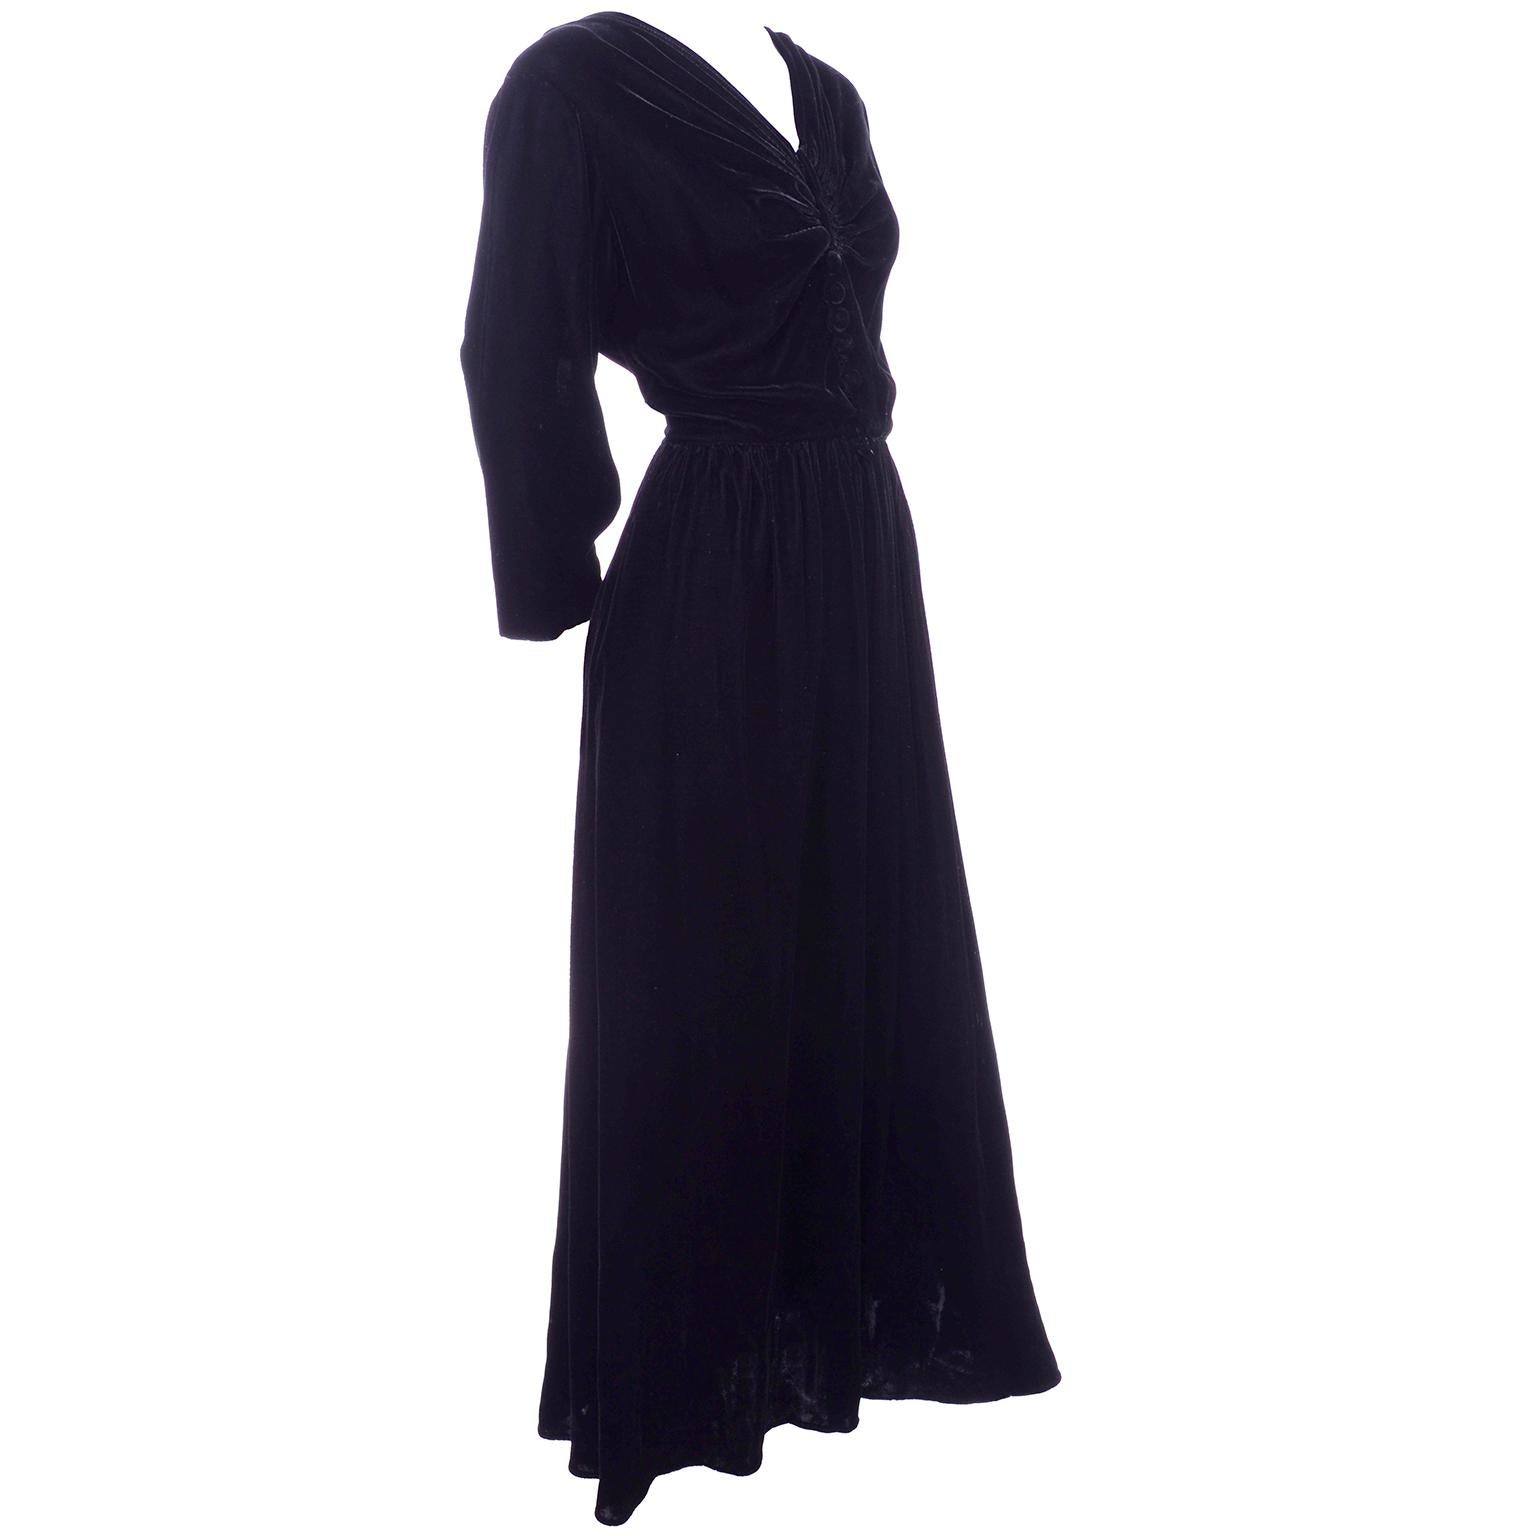 Vintage 1940s Black Velvet Evening Dress or Hostess Gown